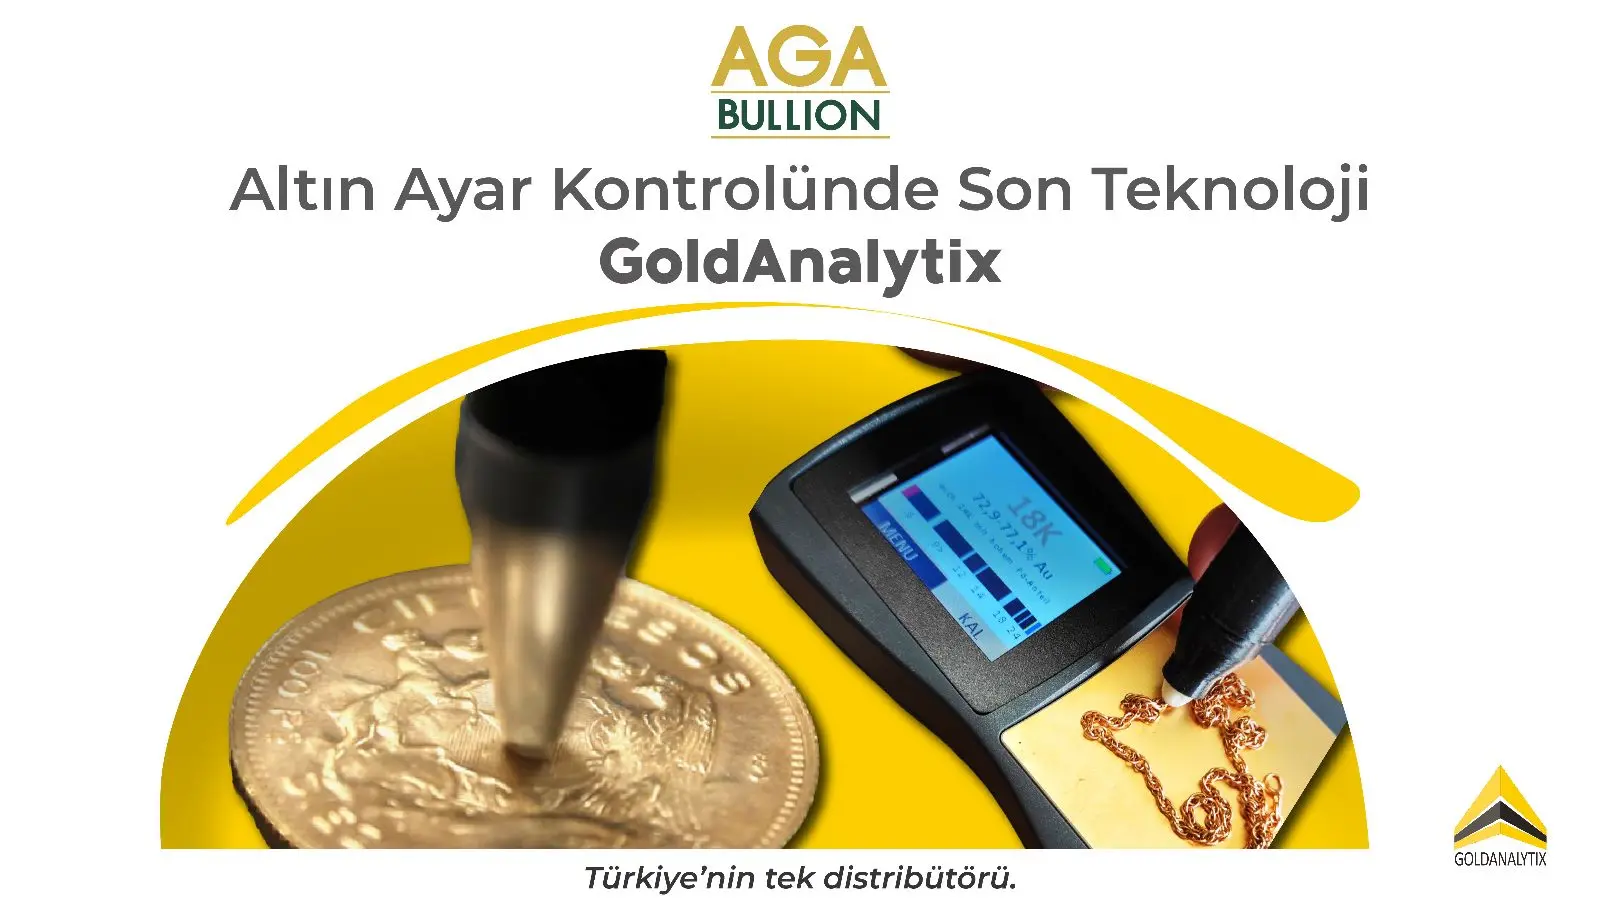 Altın Ayar Kontrolünde Son Teknoloji GoldAnalytix